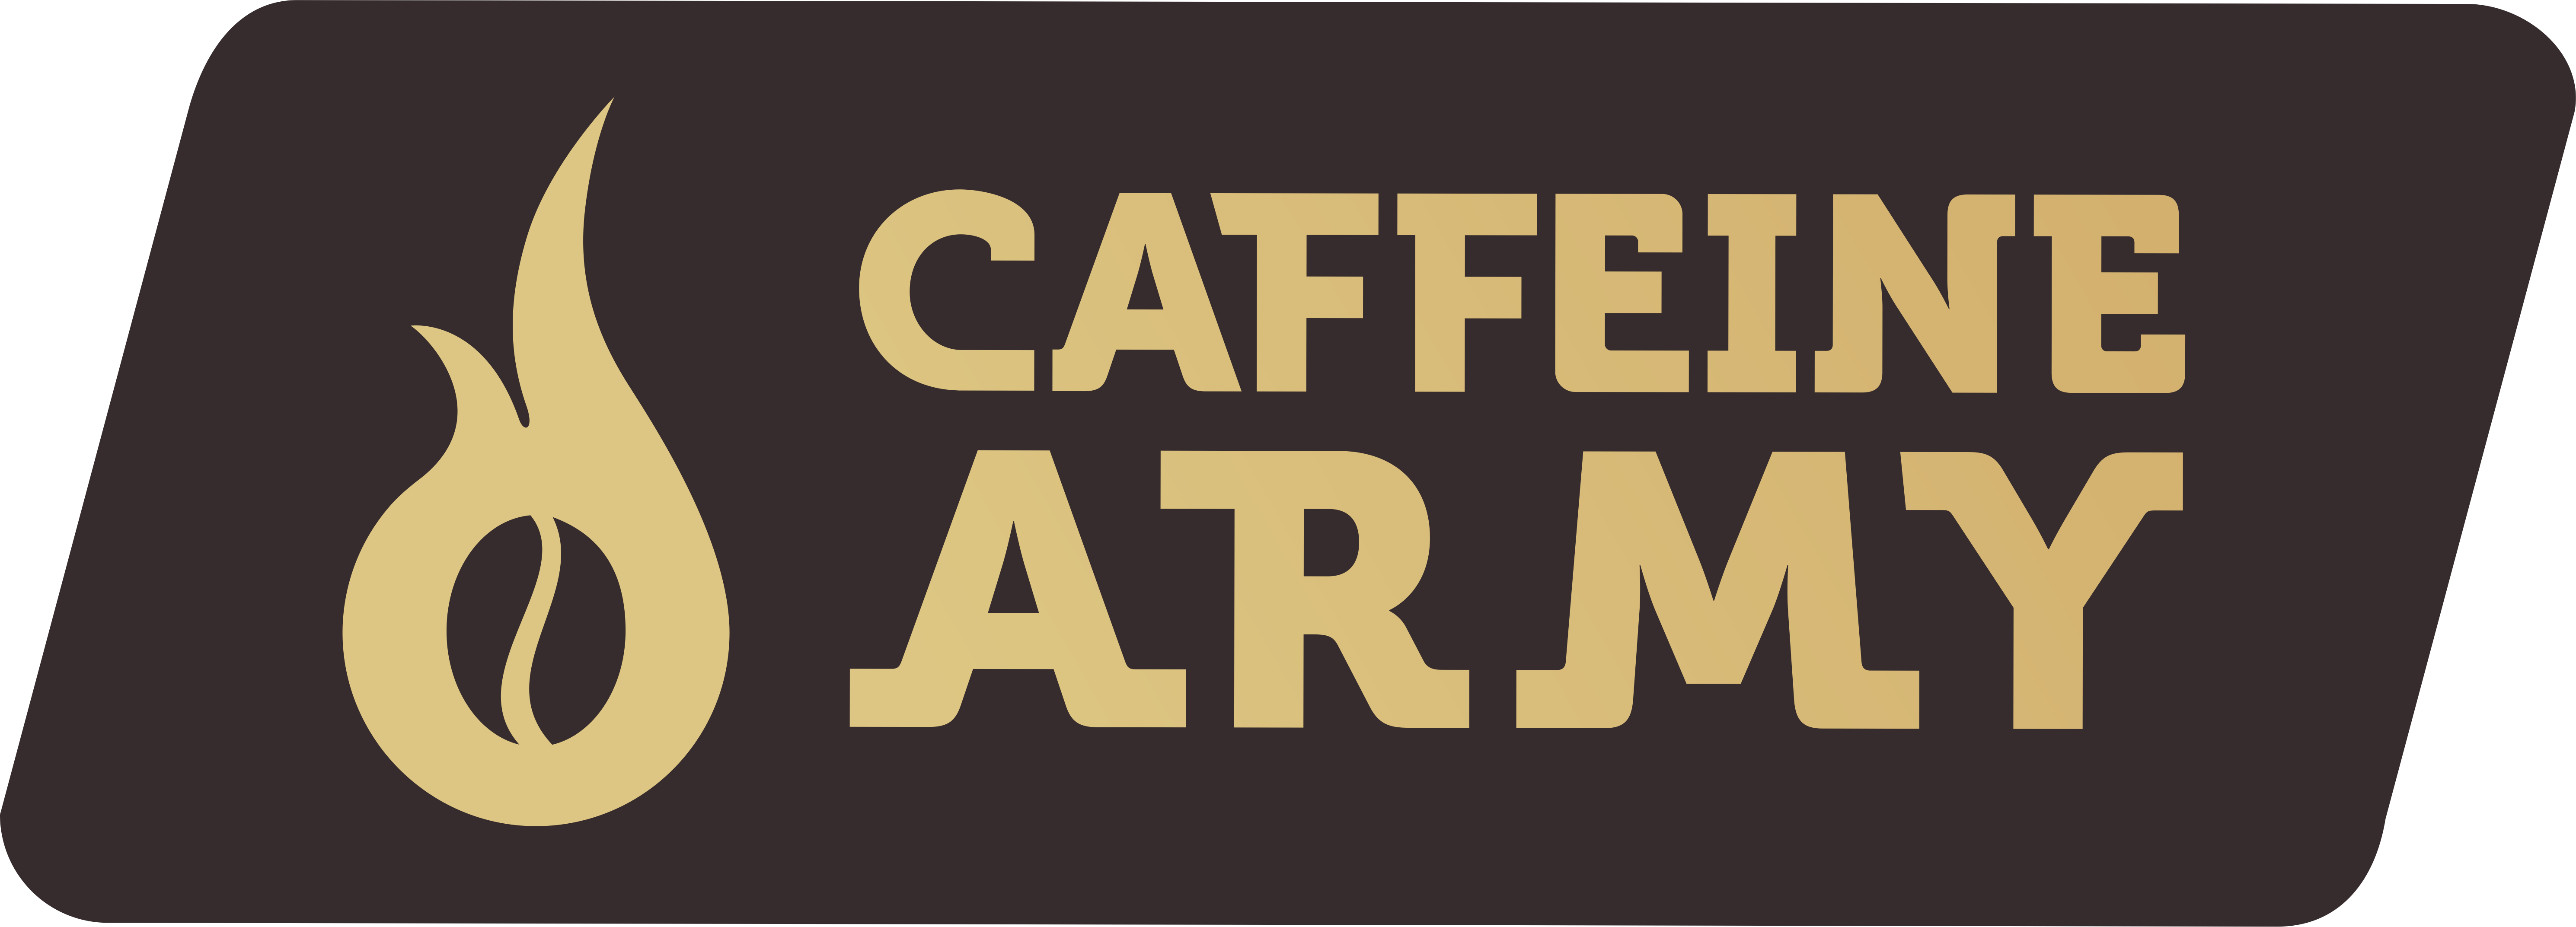 Image Cliente Caffeine Army